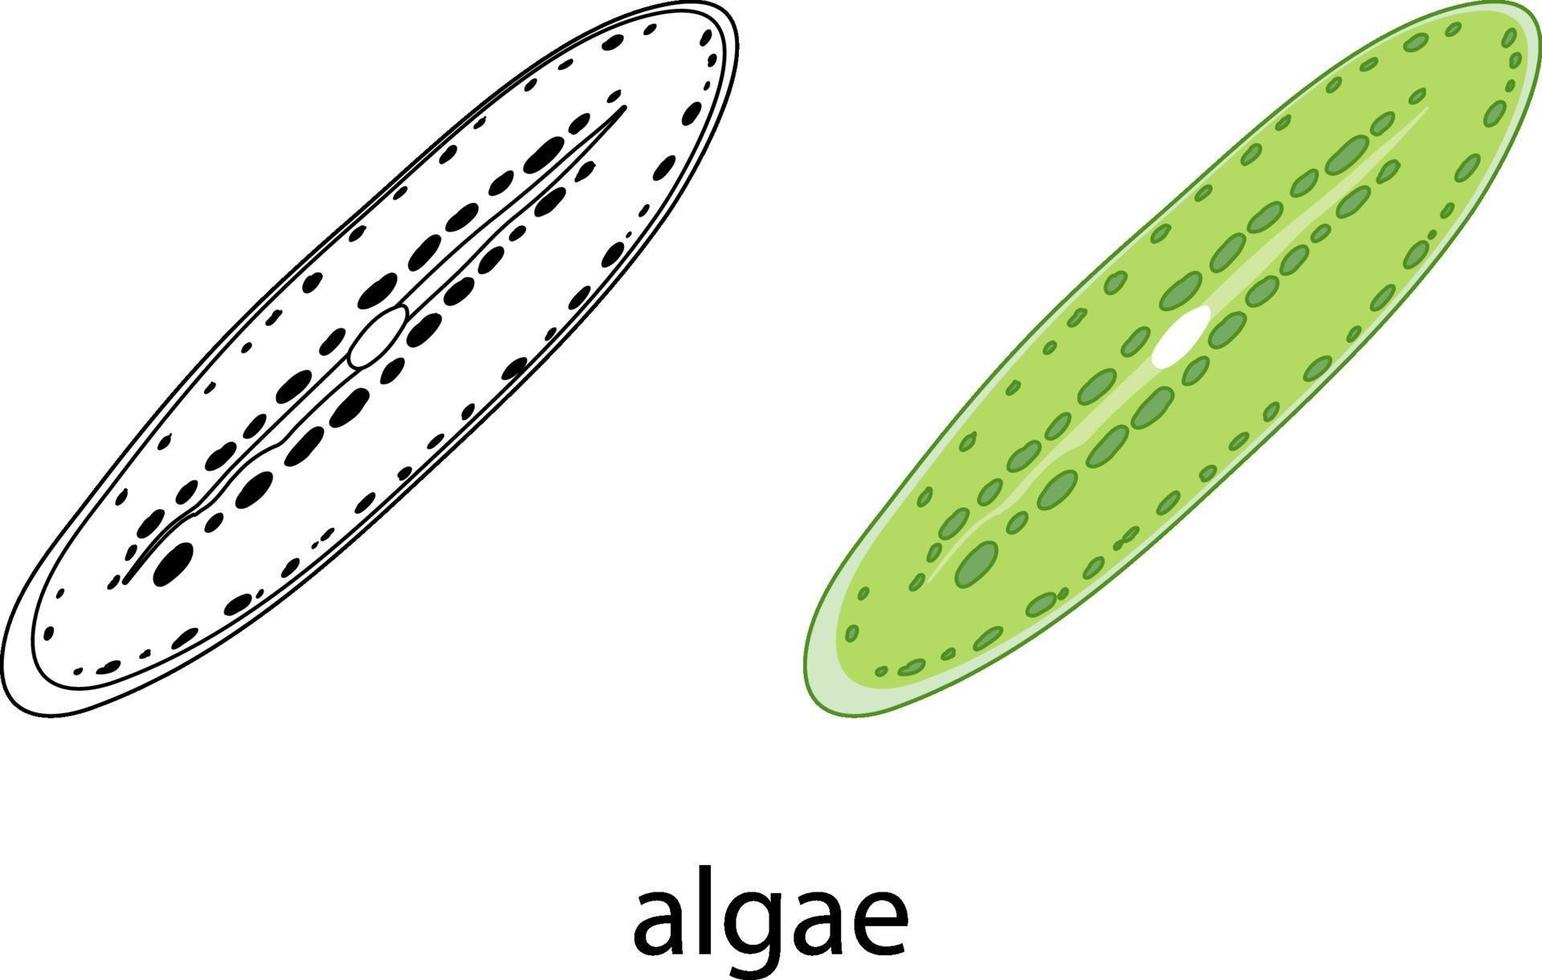 Algen in Farbe und Gekritzel auf weißem Hintergrund vektor